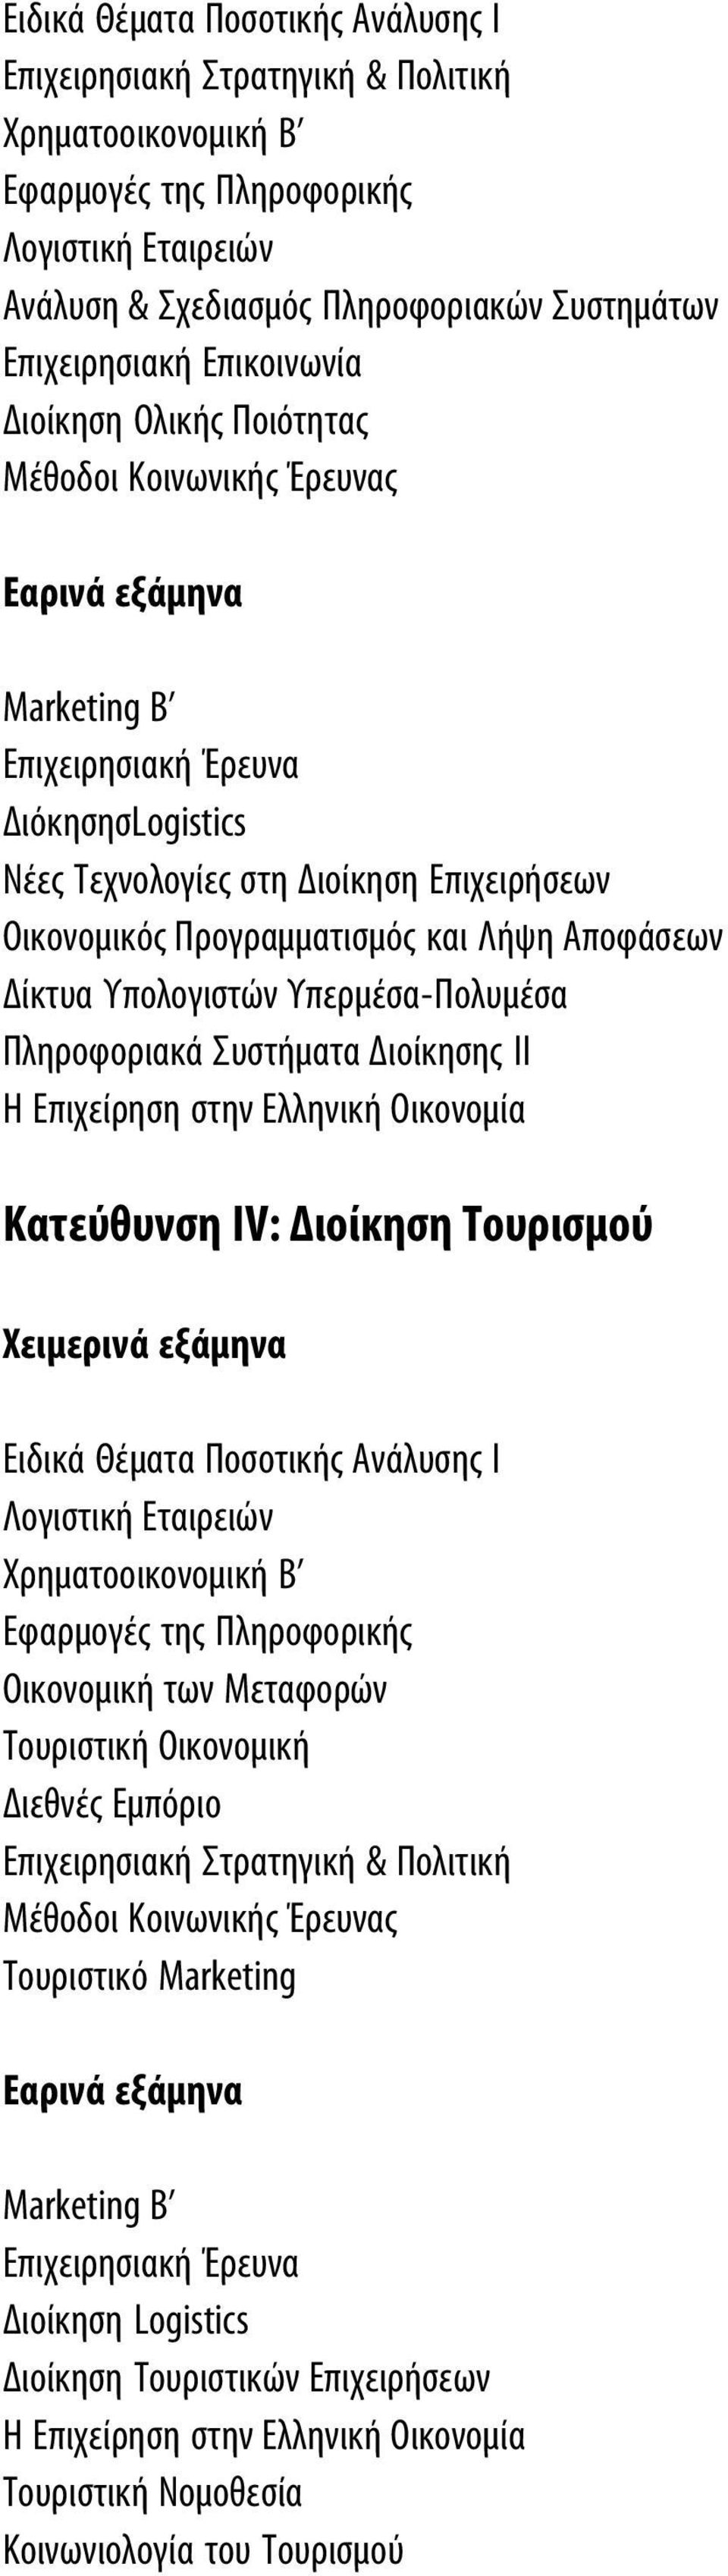 Ελληνική Οικονομία Κατεύθυνση ΙV: Διοίκηση Τουρισμού Εφαρμογές της Πληροφορικής Οικονομική των Μεταφορών Τουριστική Οικονομική Διεθνές Εμπόριο Μέθοδοι